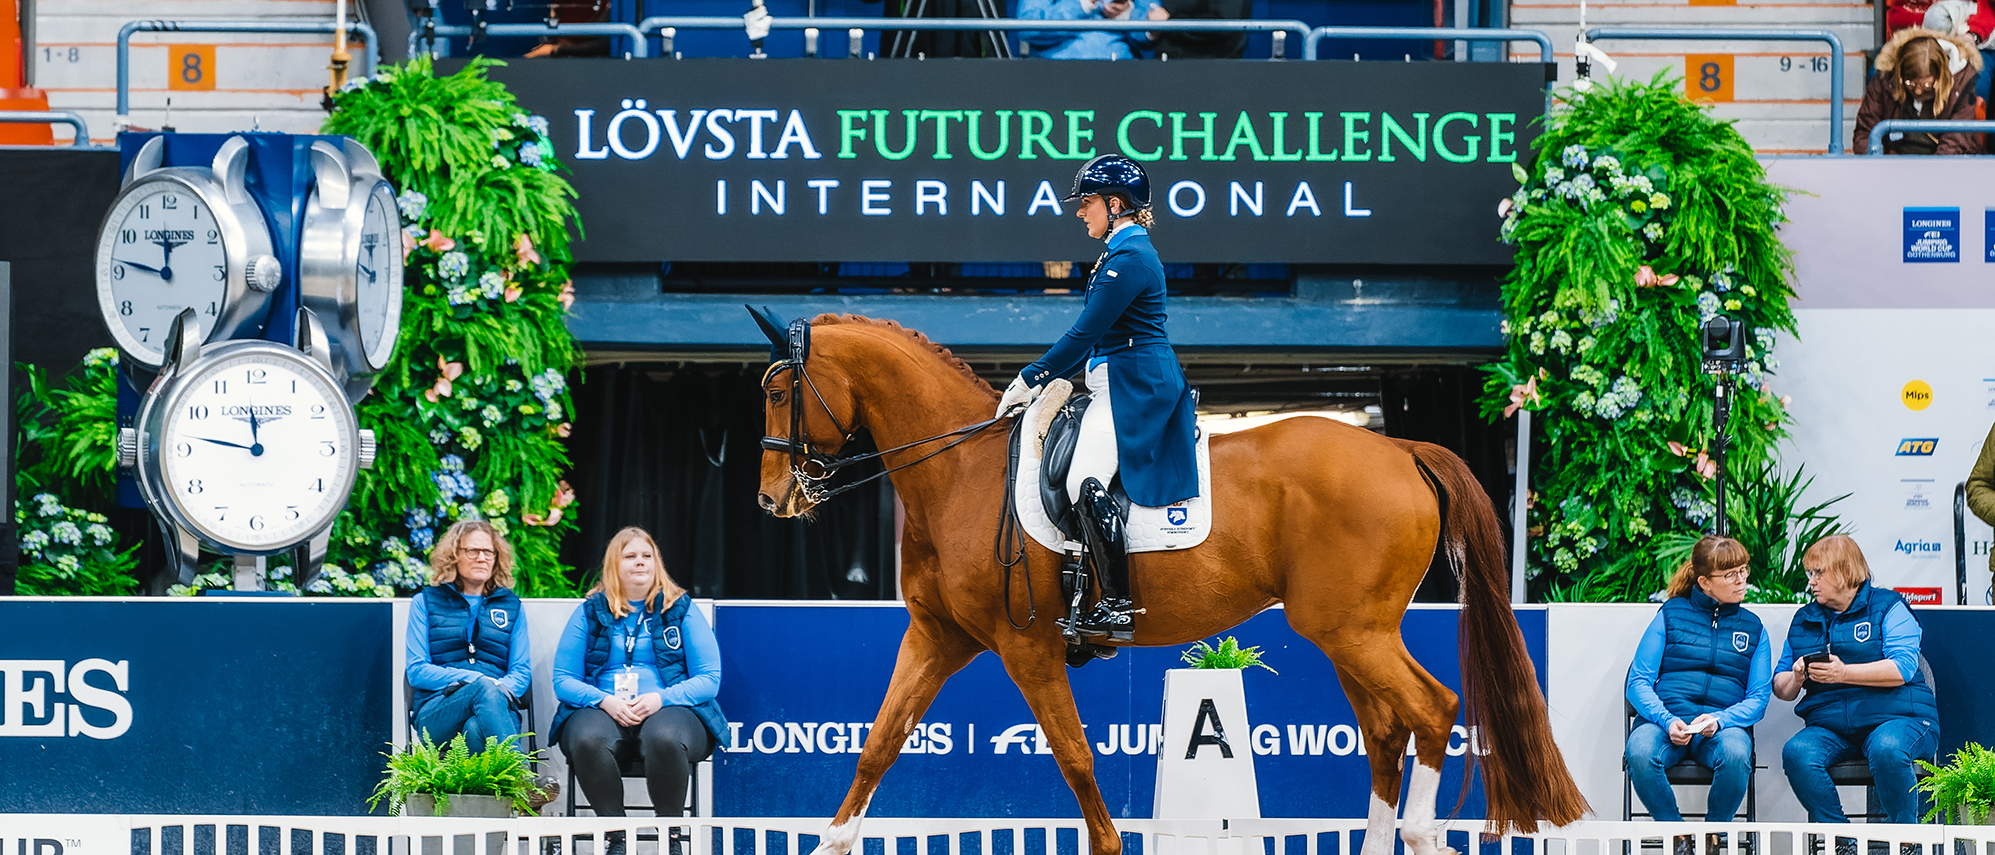 Dressyr häst framför Lövsta future Challenge skylt på arenan. 